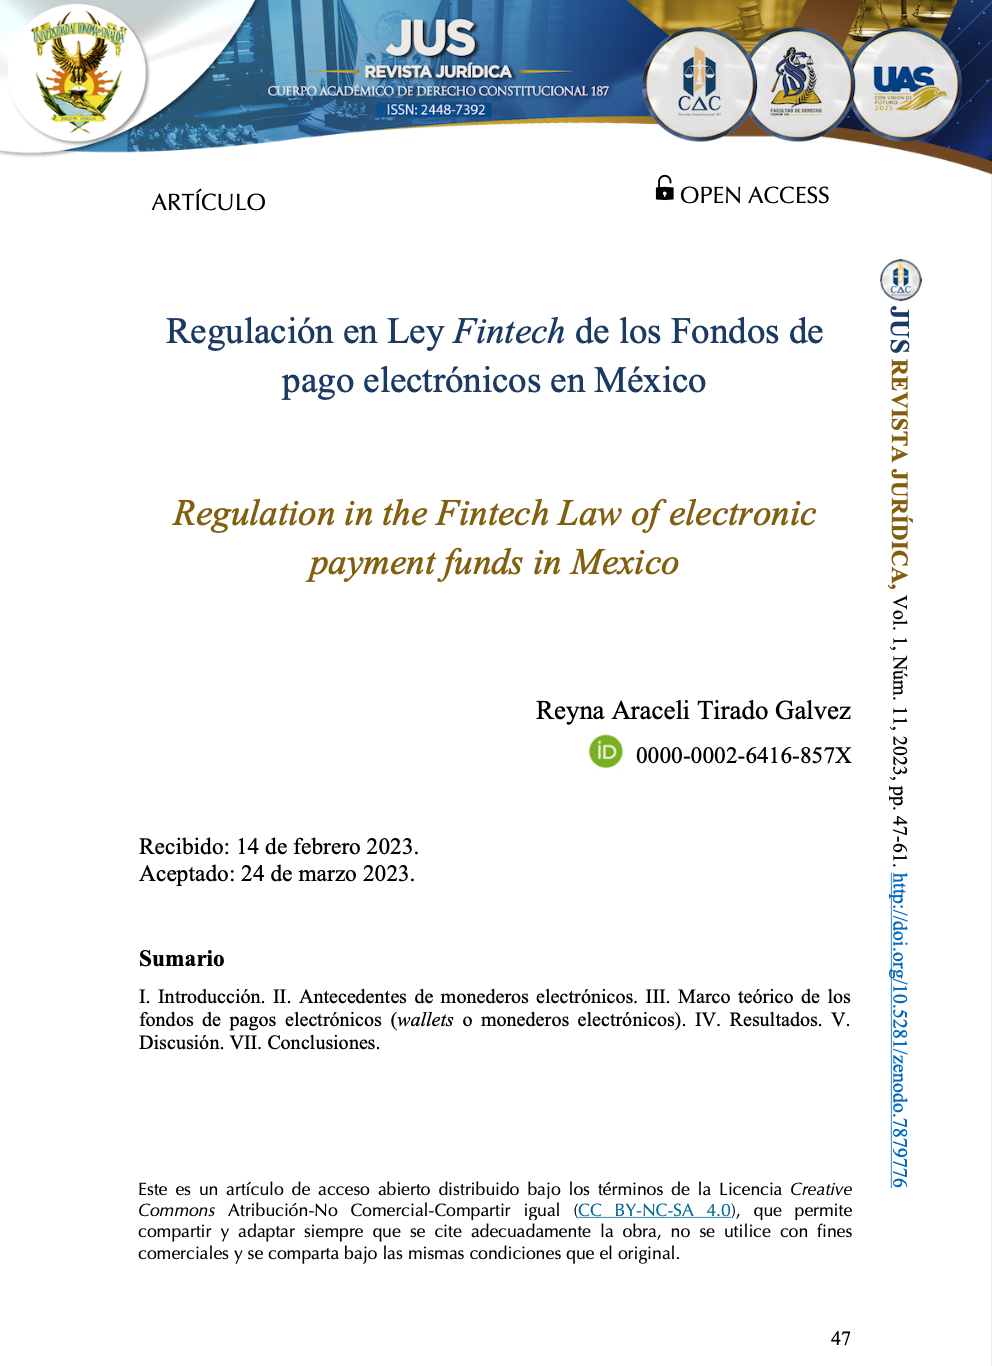 Regulación en Ley Fintech de los Fondos de pago electrónicos en México